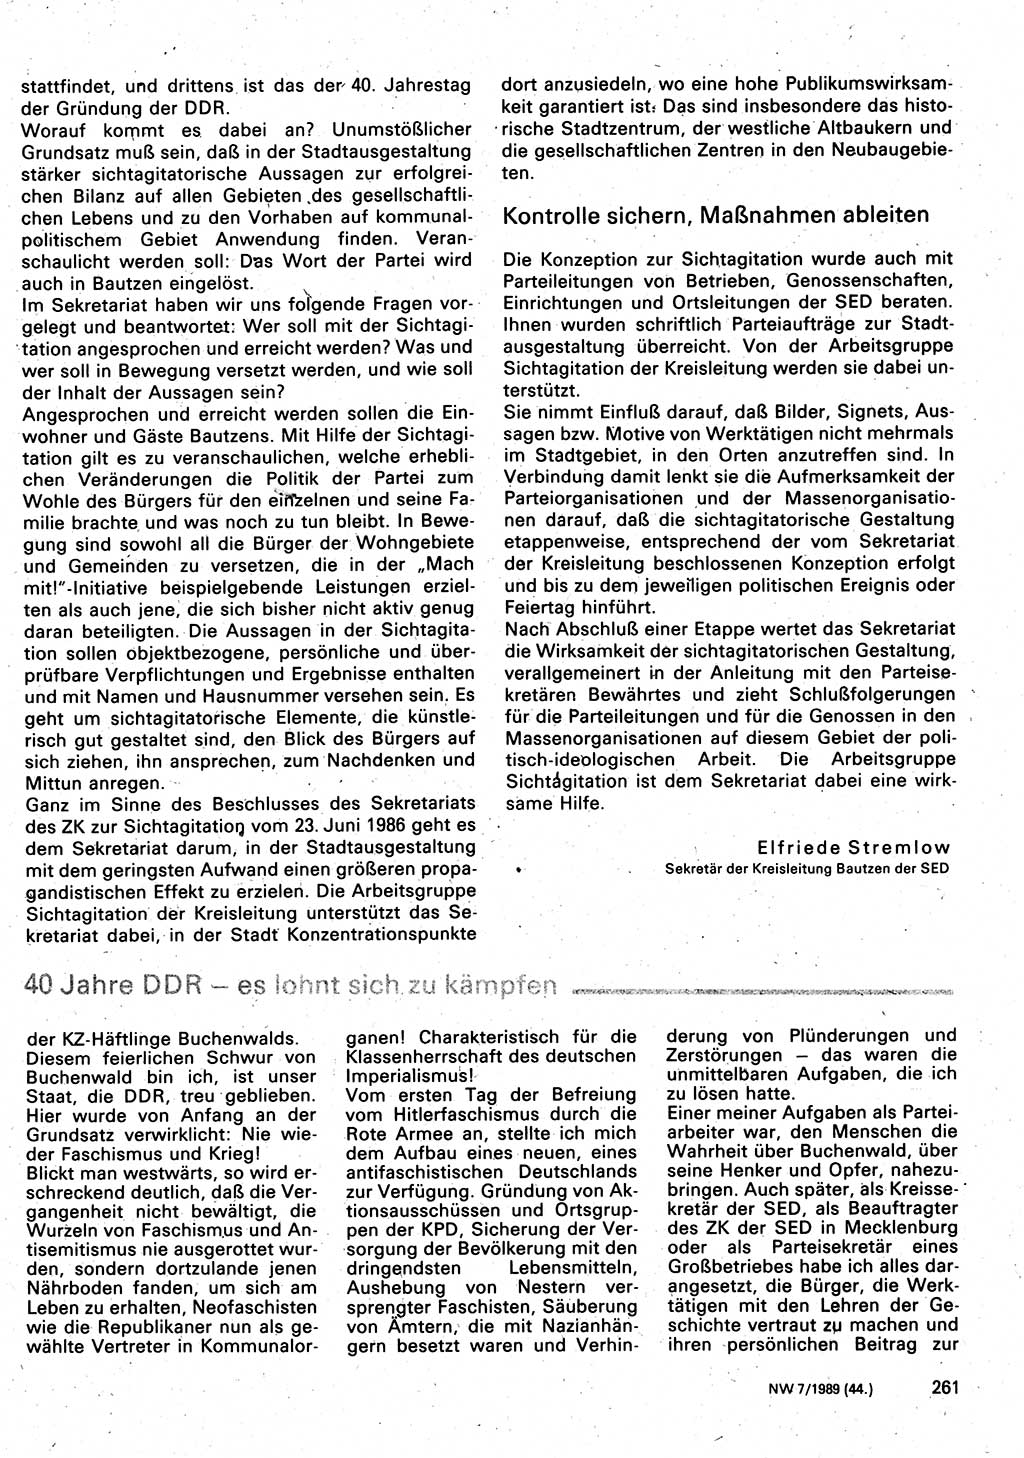 Neuer Weg (NW), Organ des Zentralkomitees (ZK) der SED (Sozialistische Einheitspartei Deutschlands) für Fragen des Parteilebens, 44. Jahrgang [Deutsche Demokratische Republik (DDR)] 1989, Seite 261 (NW ZK SED DDR 1989, S. 261)